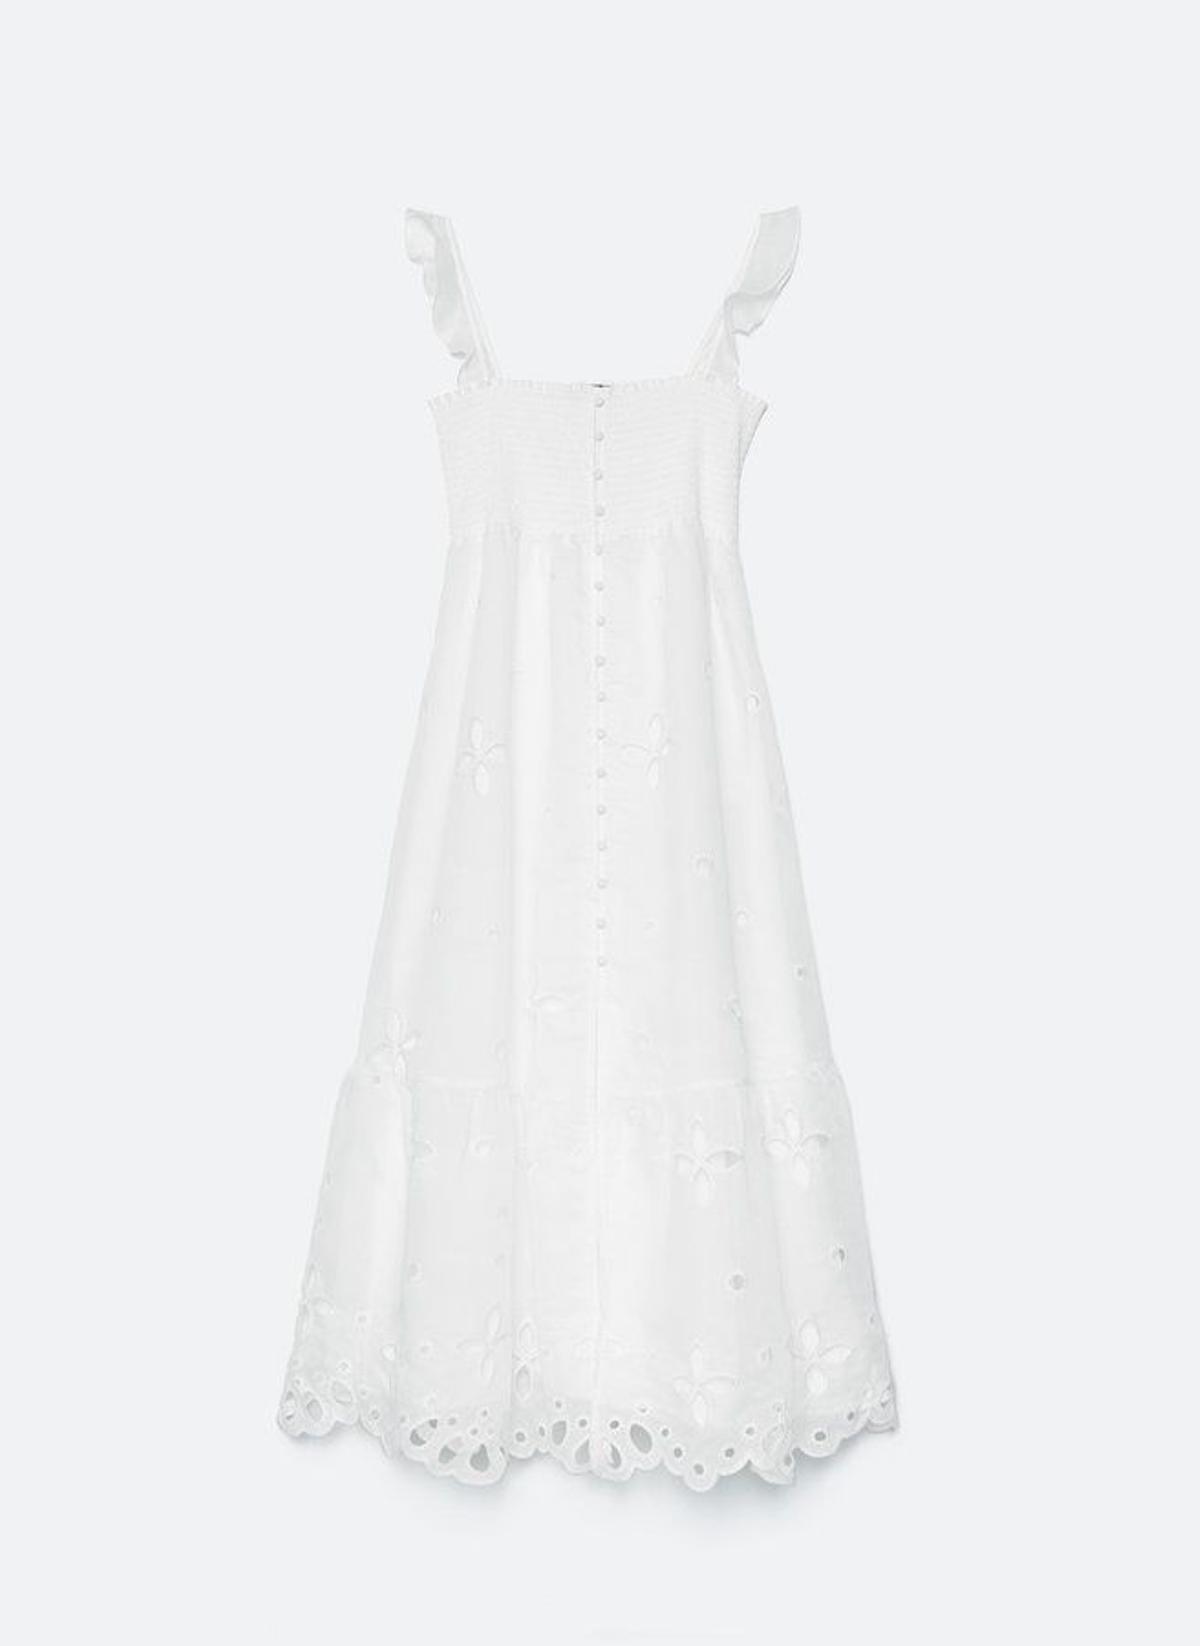 El vestido romántico blanco de organza